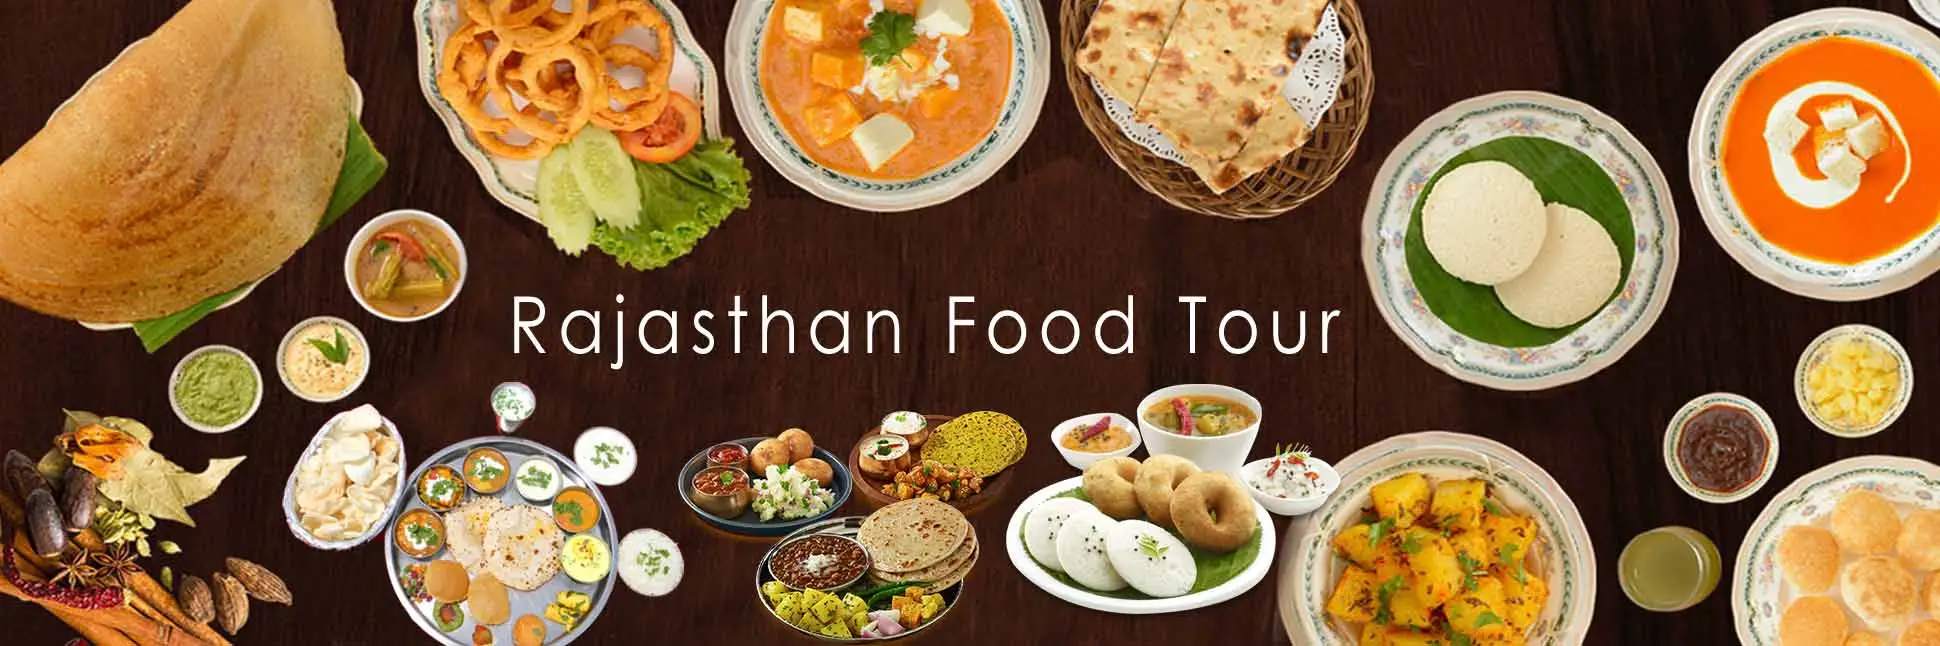 Rajasthan food tour